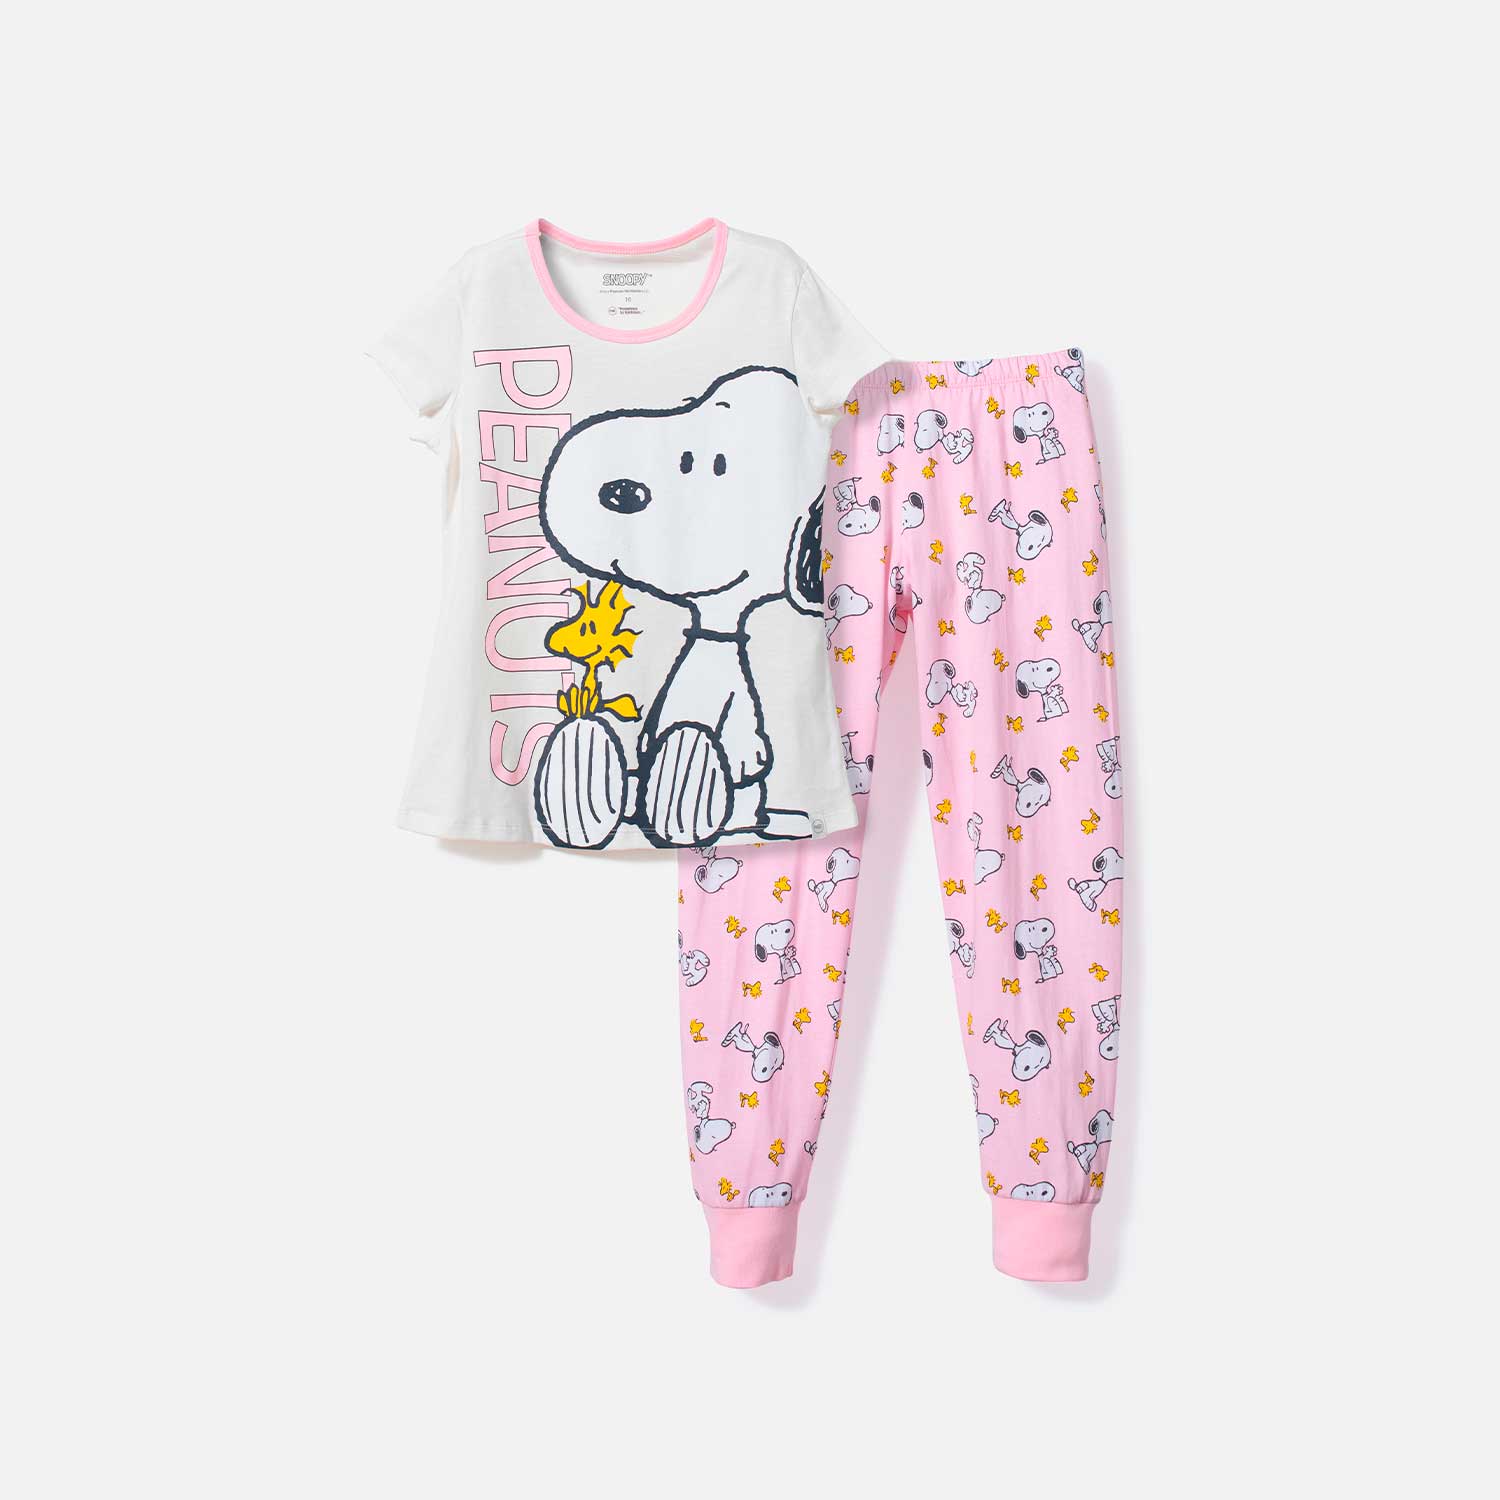 Repulsión Vuelo perrito Pijama de Snoopy manga corta marfil y rosada para niña